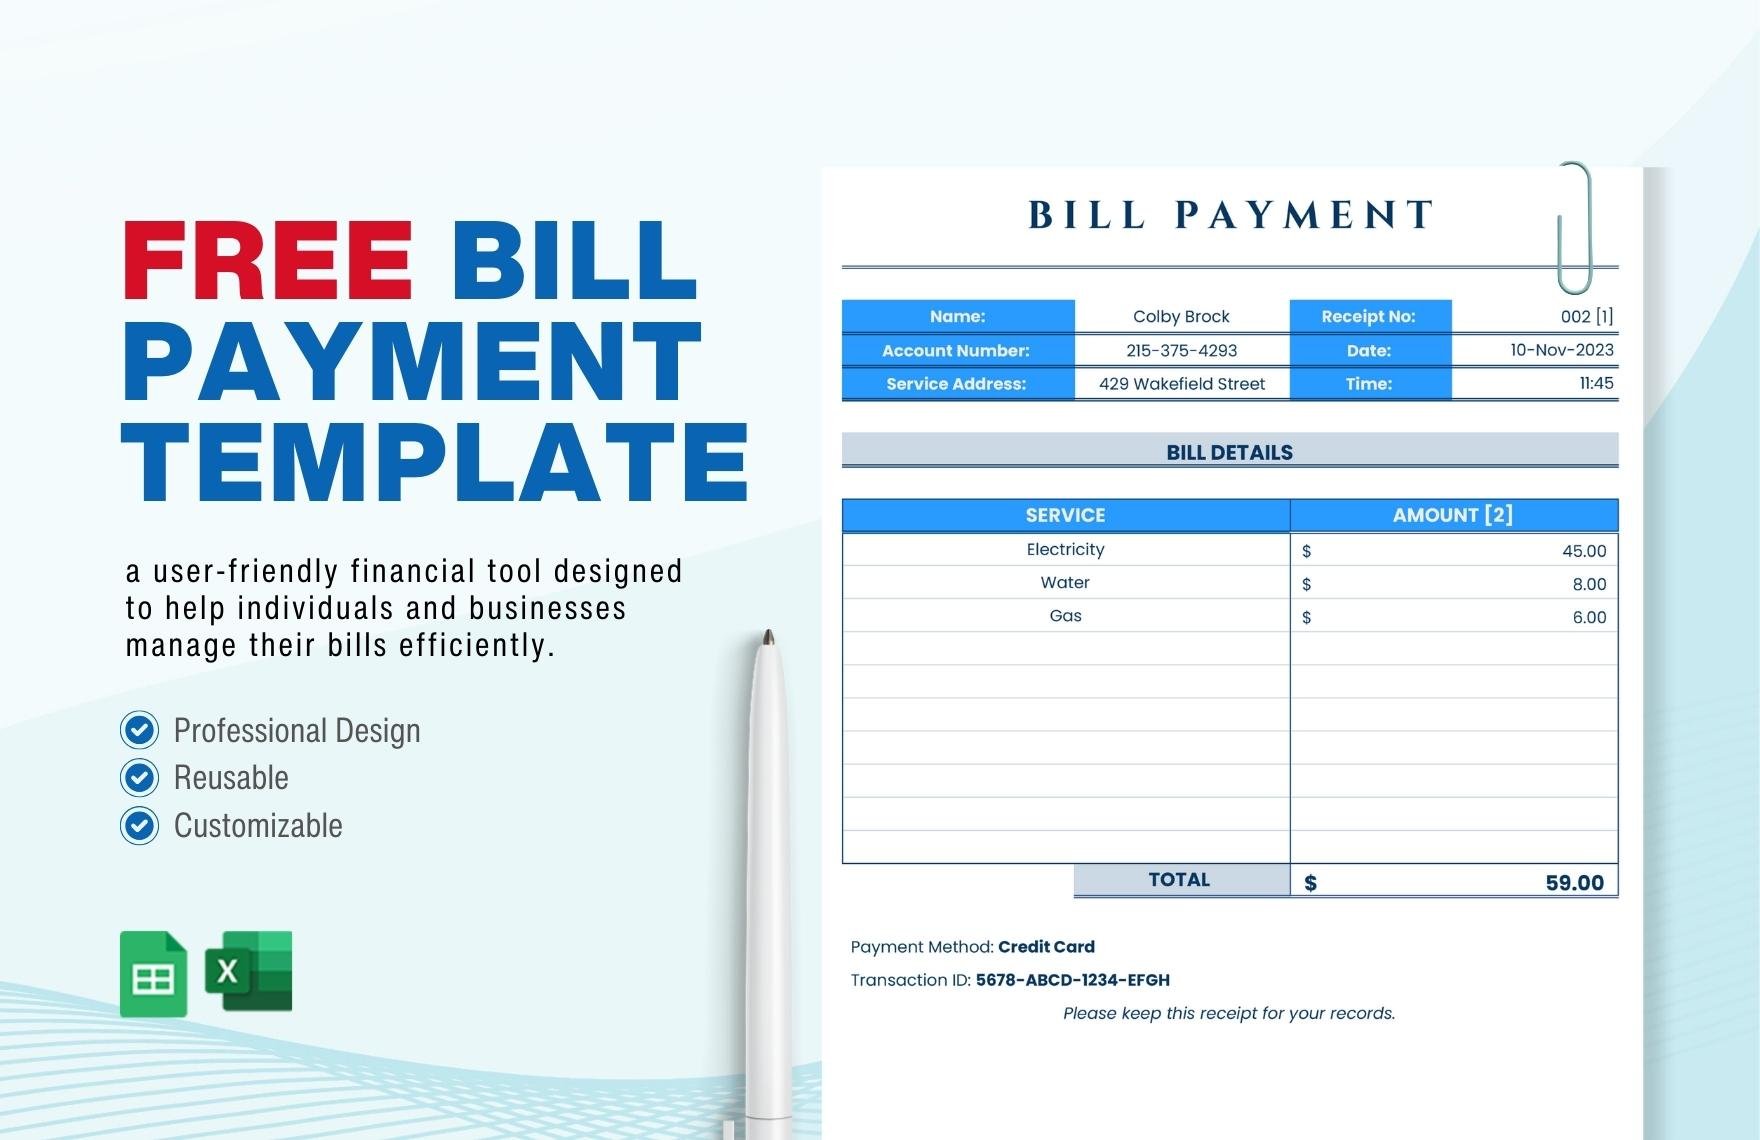 Bill Payment Template